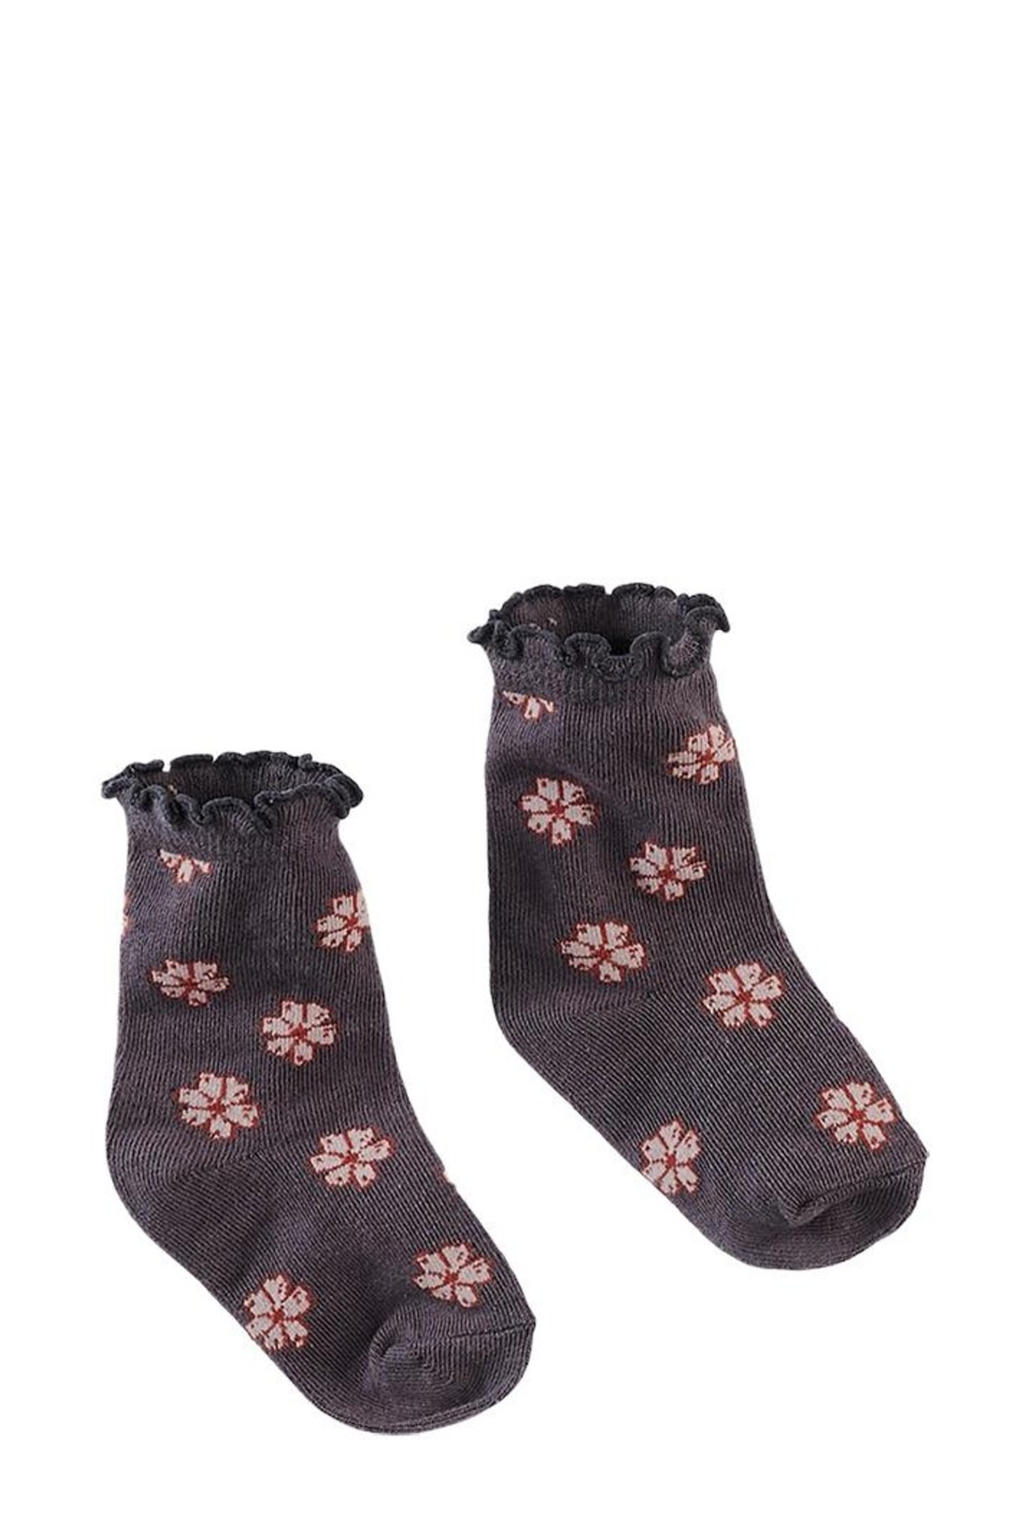 Z8 sokken Janga grijs/roze